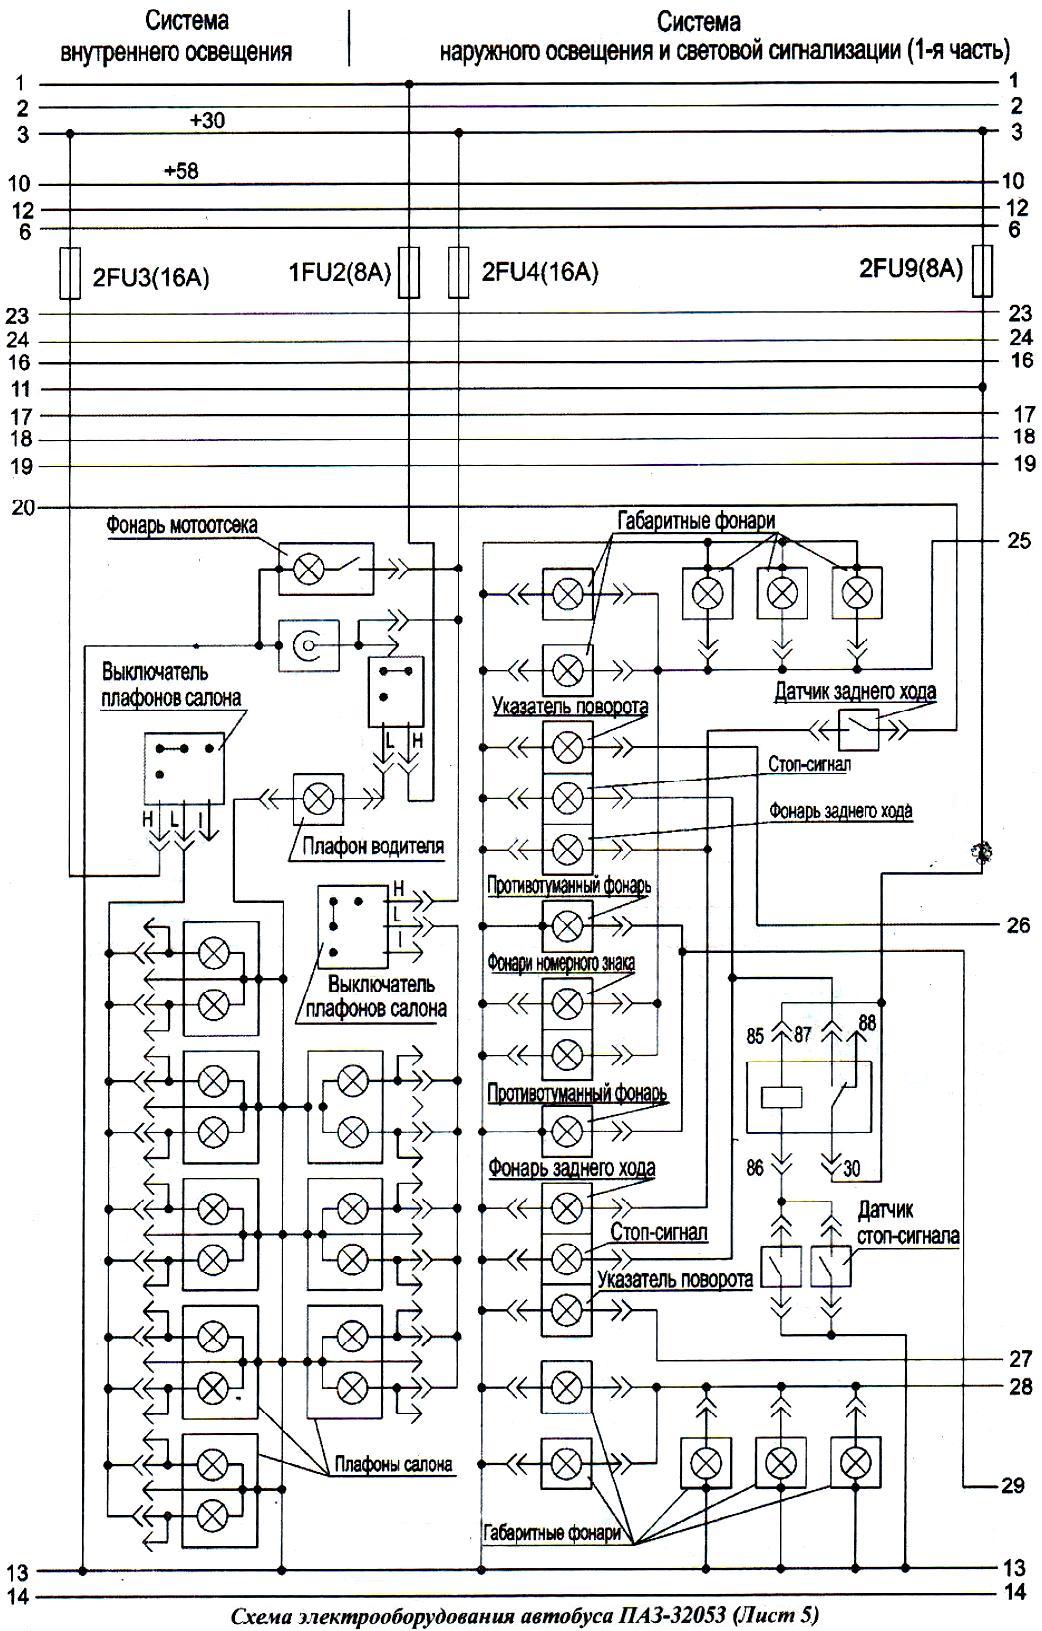 Схема освещения ПАЗ-32053